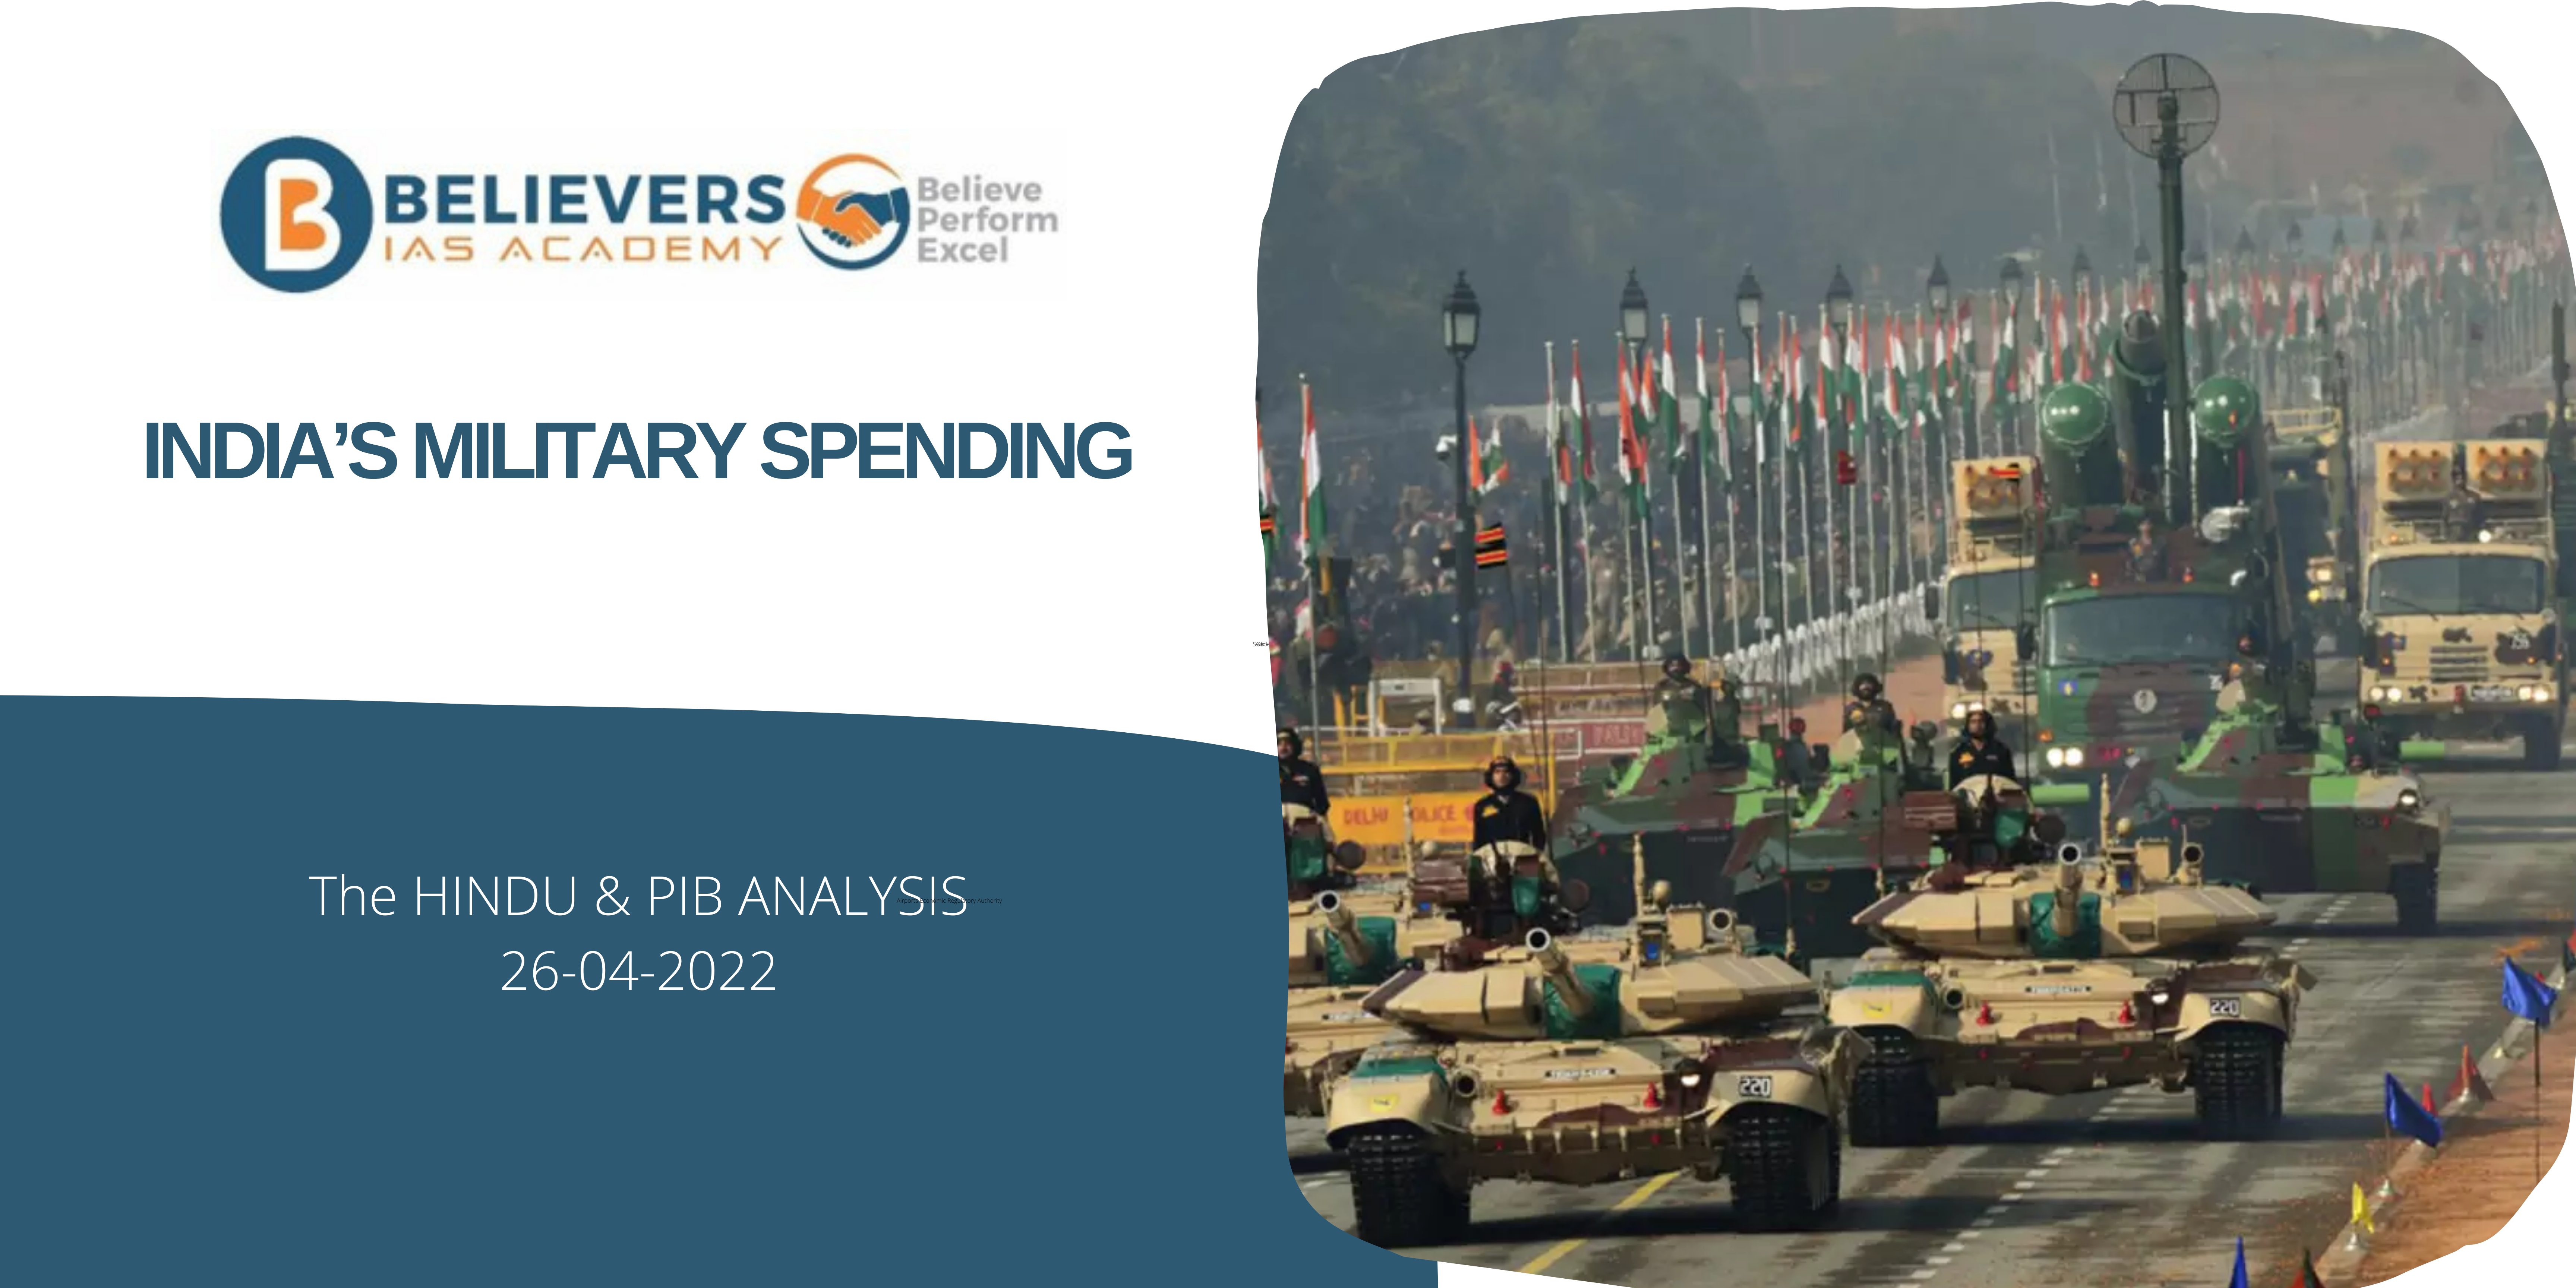 IAS Current affairs - India’s Military Spending